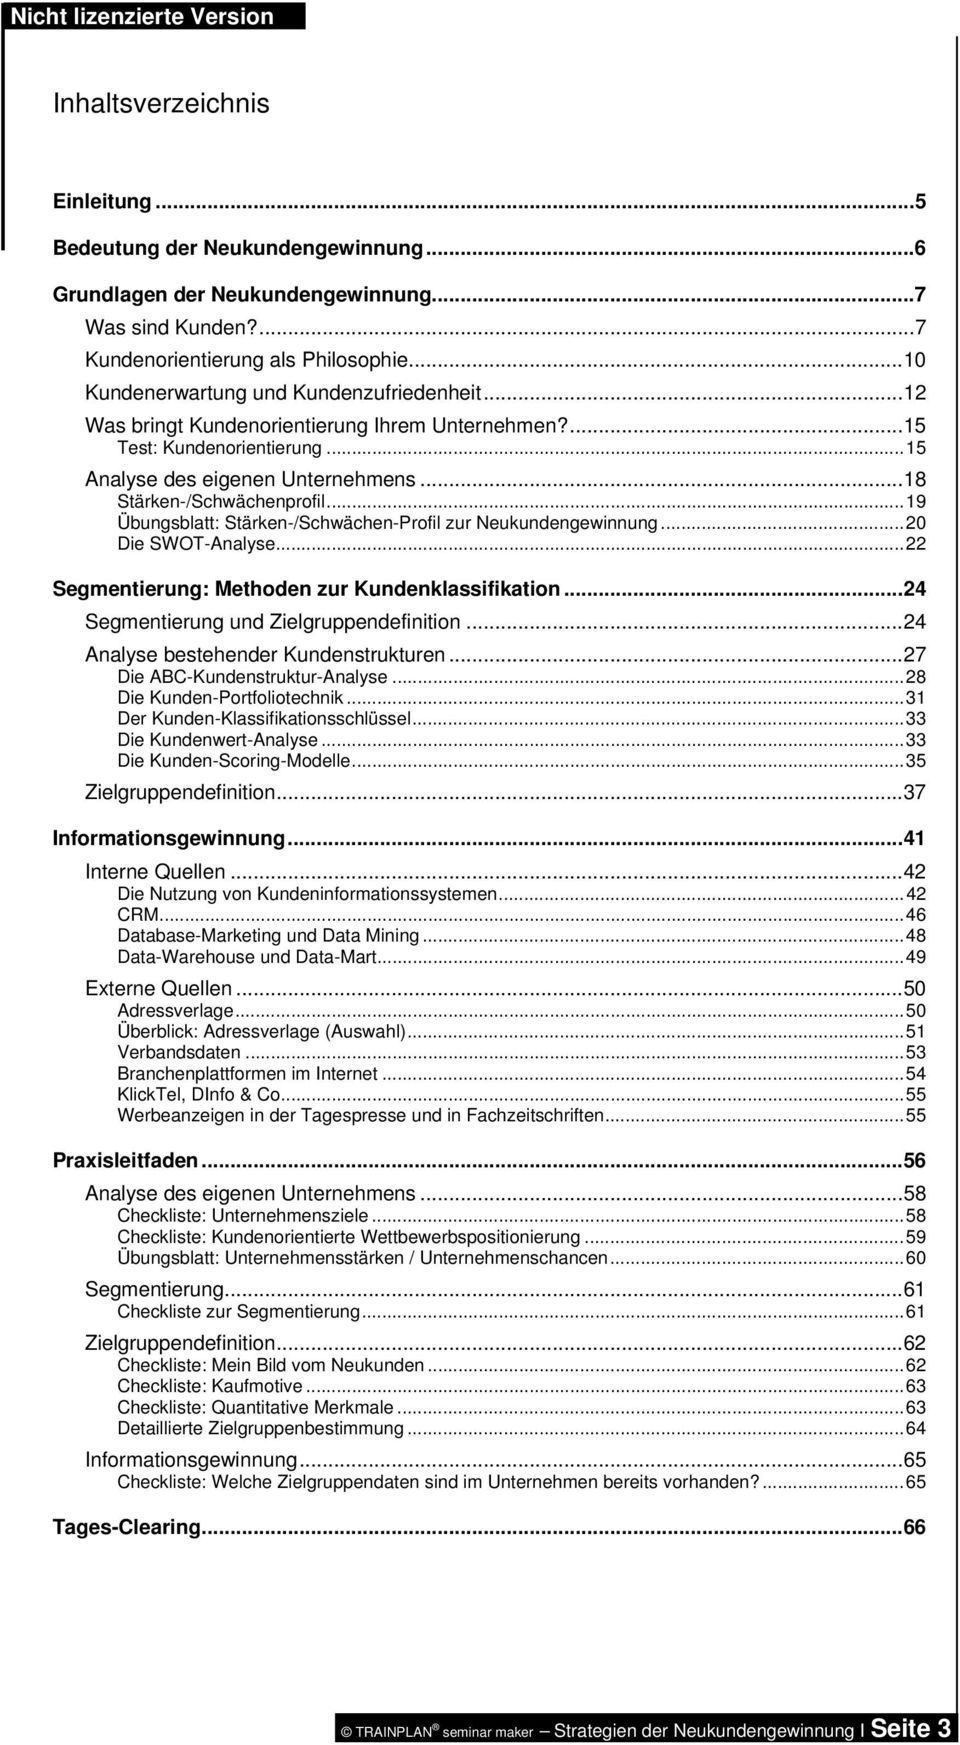 ..19 Übungsblatt: Stärken-/Schwächen-Profil zur Neukundengewinnung...20 Die SWOT-Analyse...22 Segmentierung: Methoden zur Kundenklassifikation...24 Segmentierung und Zielgruppendefinition.